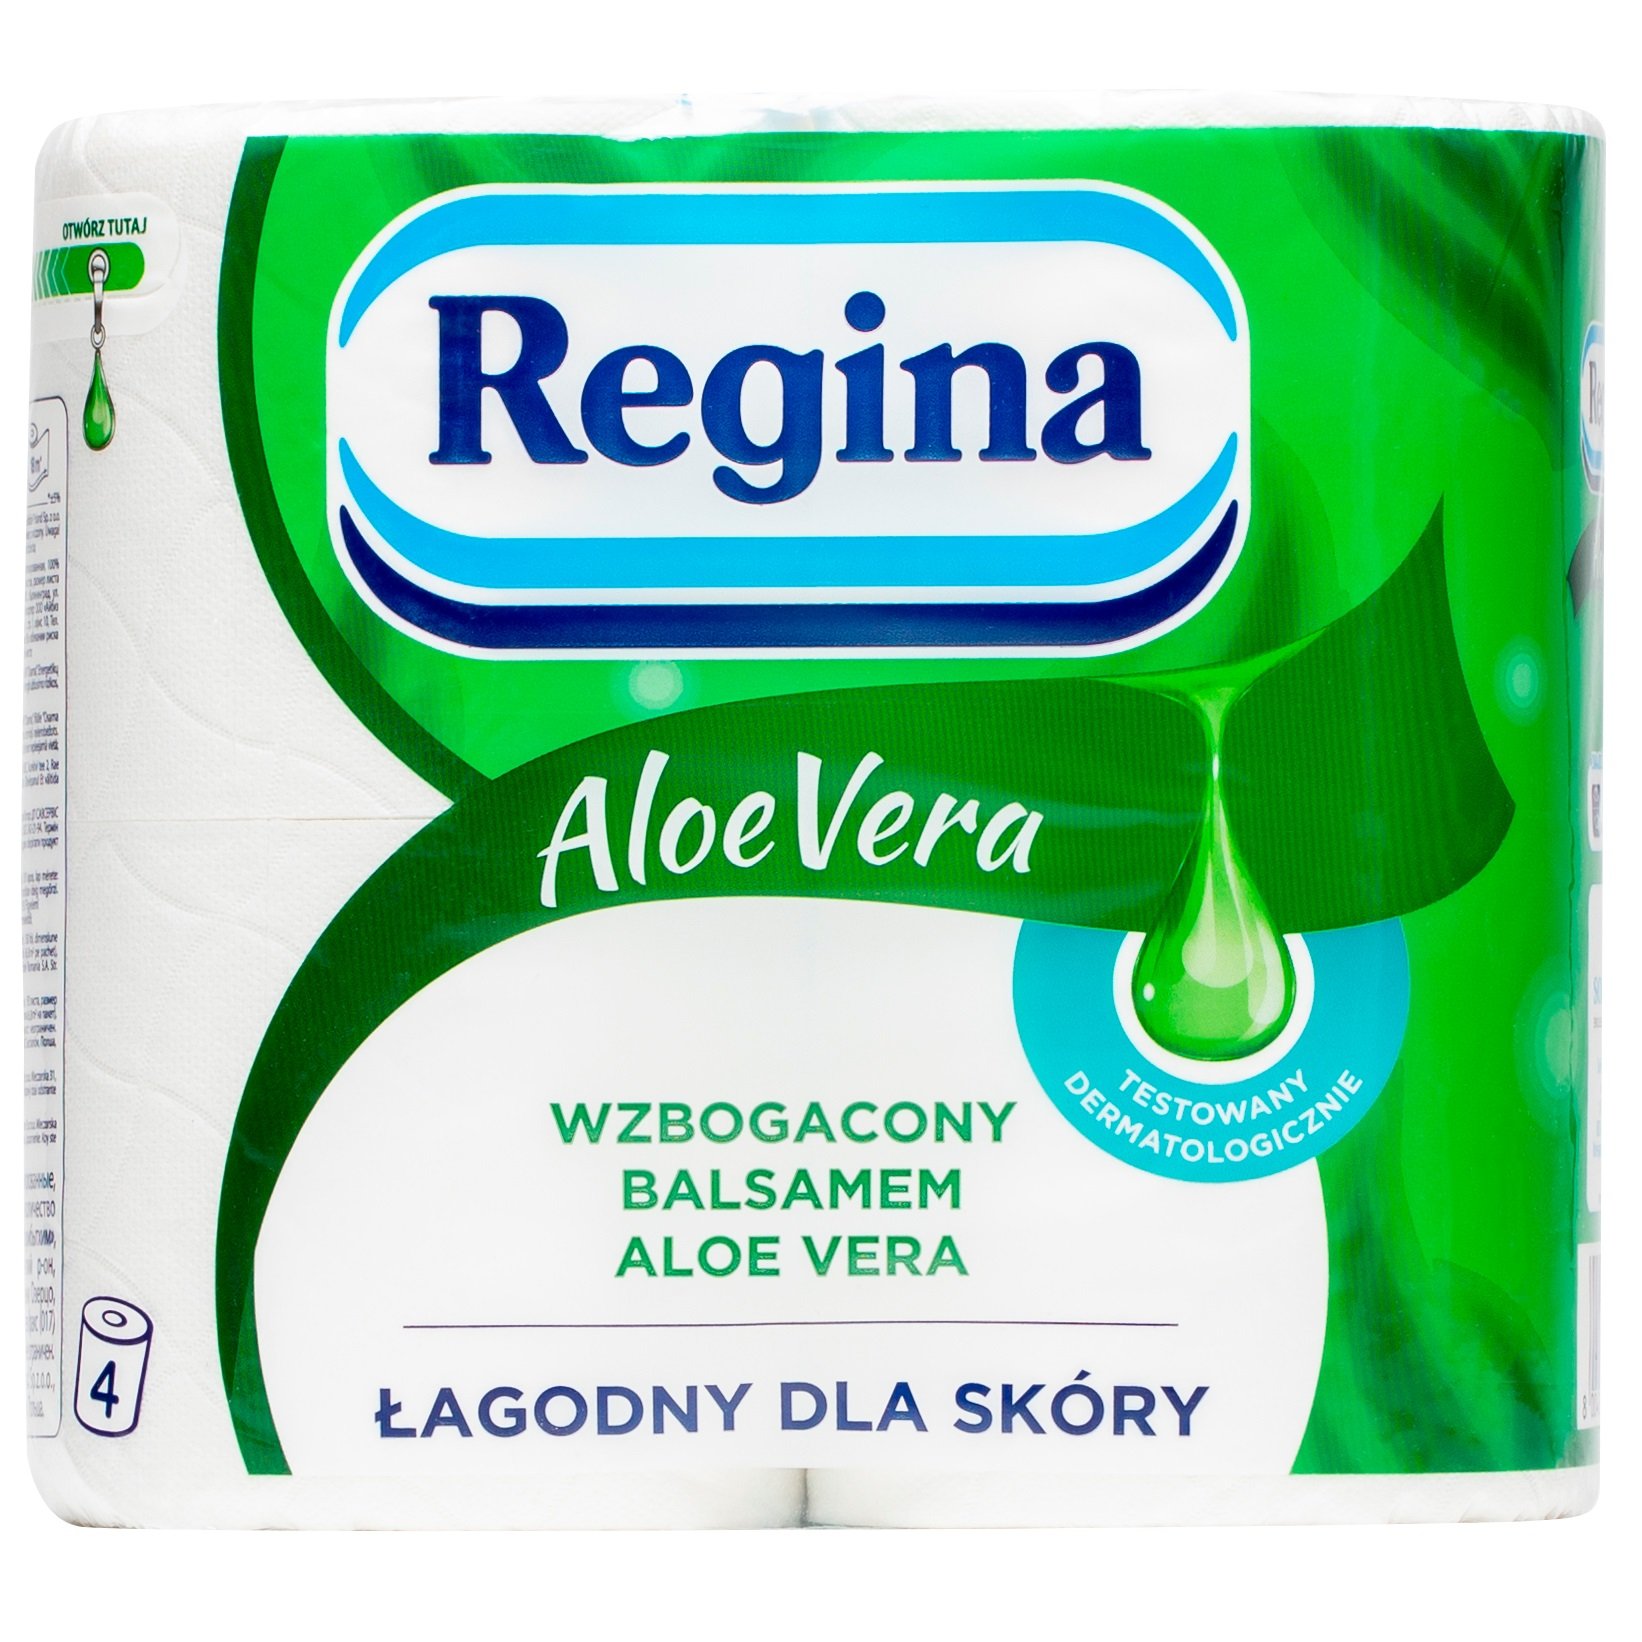 Туалетная бумага Regina Aloe Vera, трехслойная, 4 рулона (416858) - фото 1